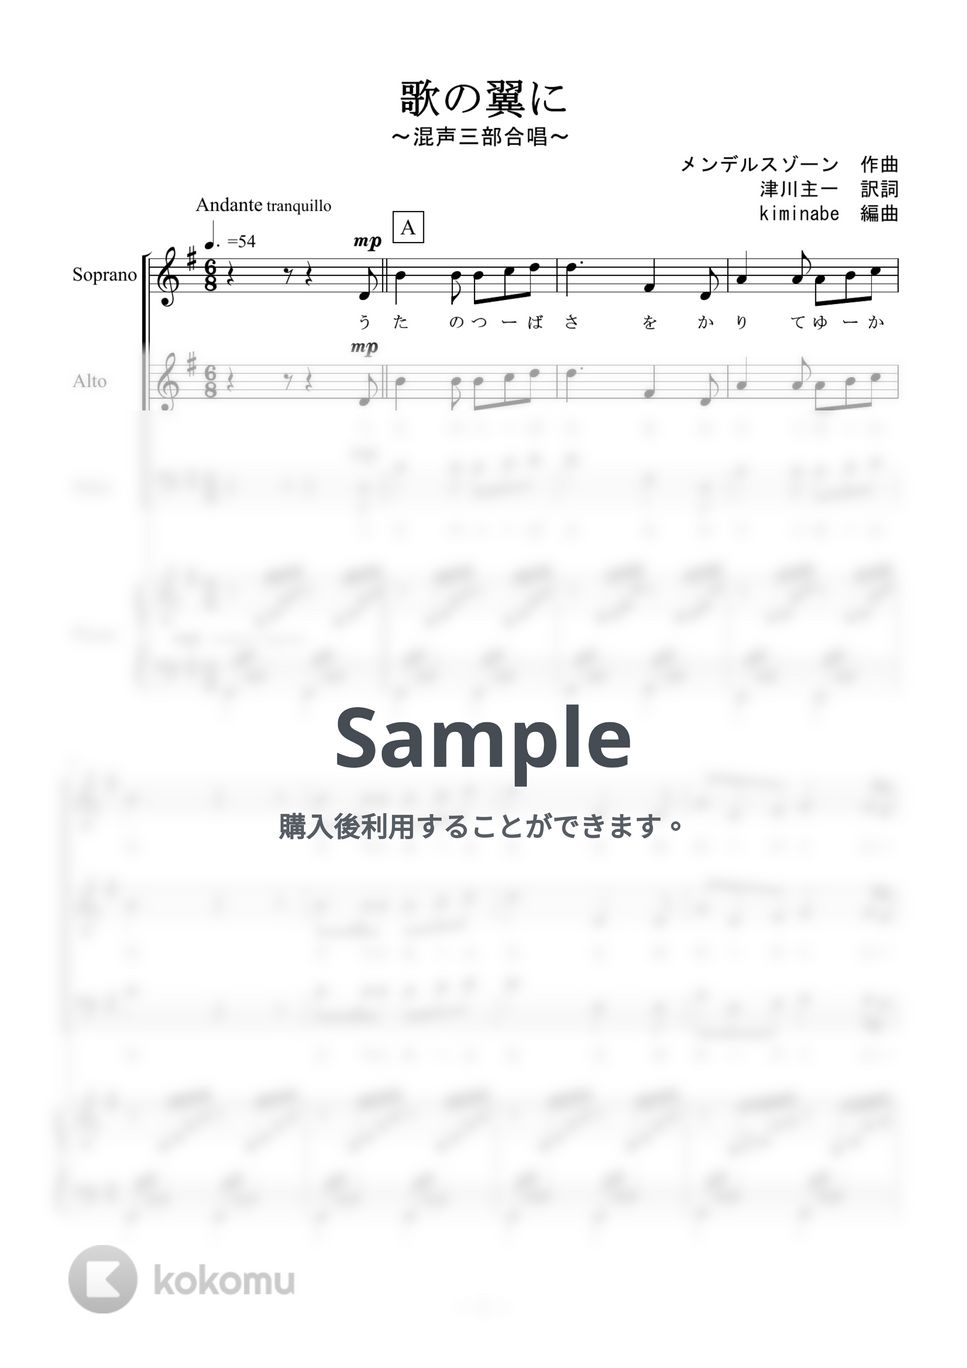 メンデルスゾーン - 歌の翼に (混声三部合唱) by kiminabe